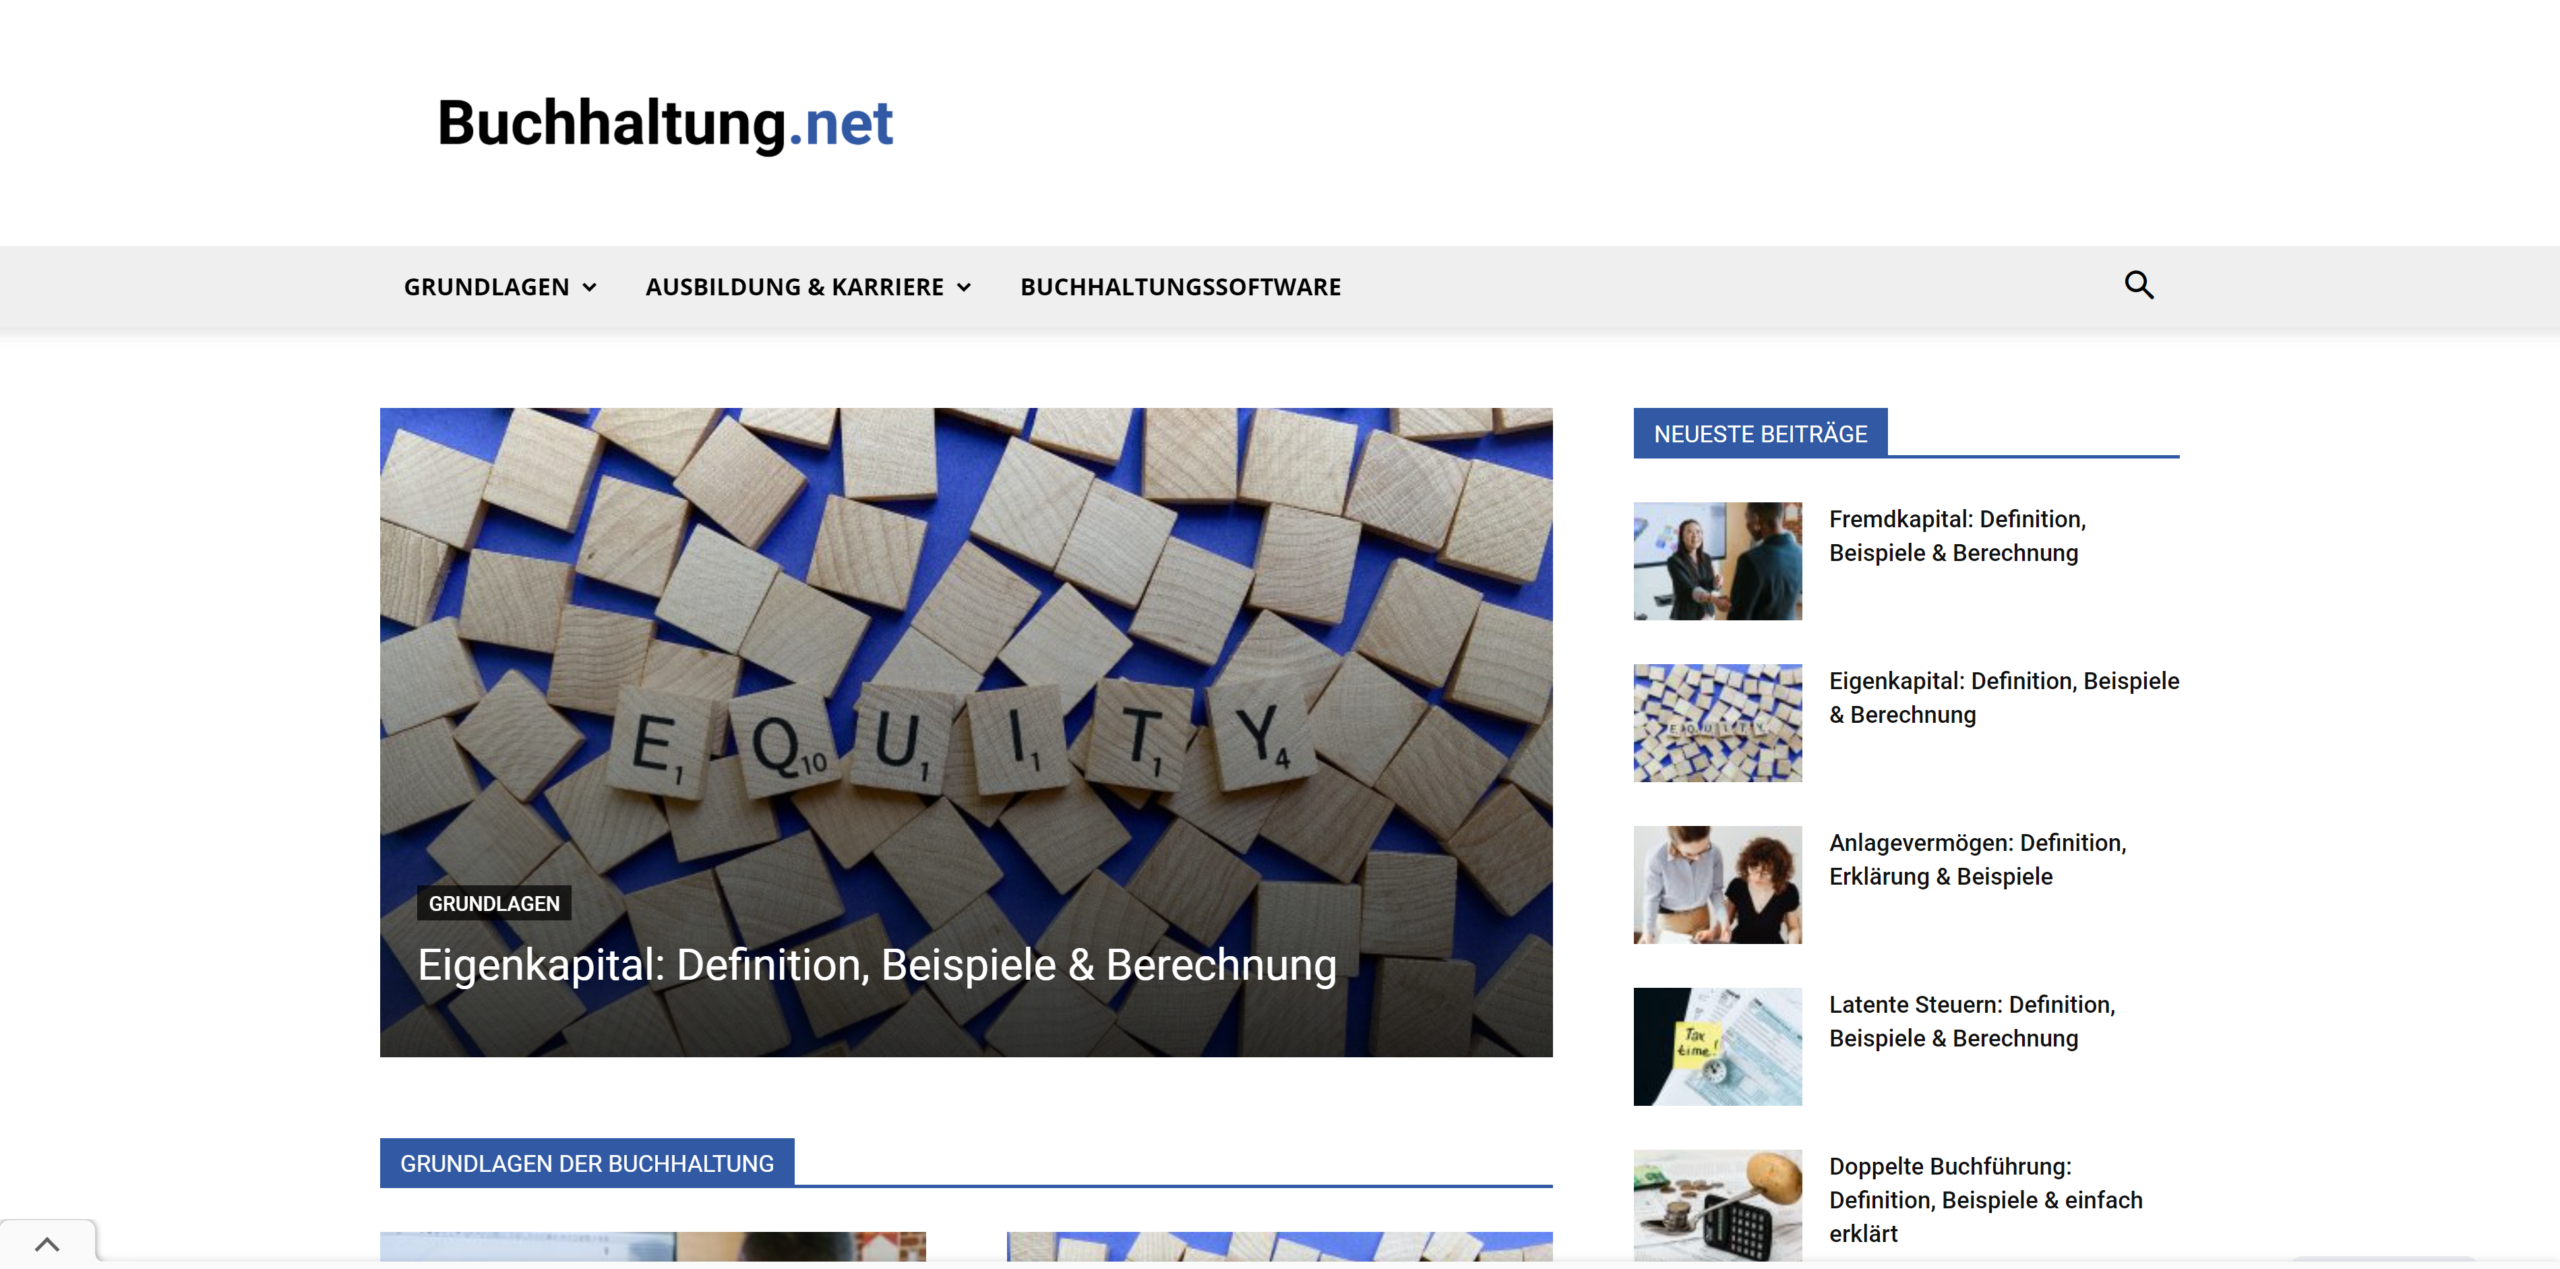 Buchhaltung.net: Plattform für Buchhaltung